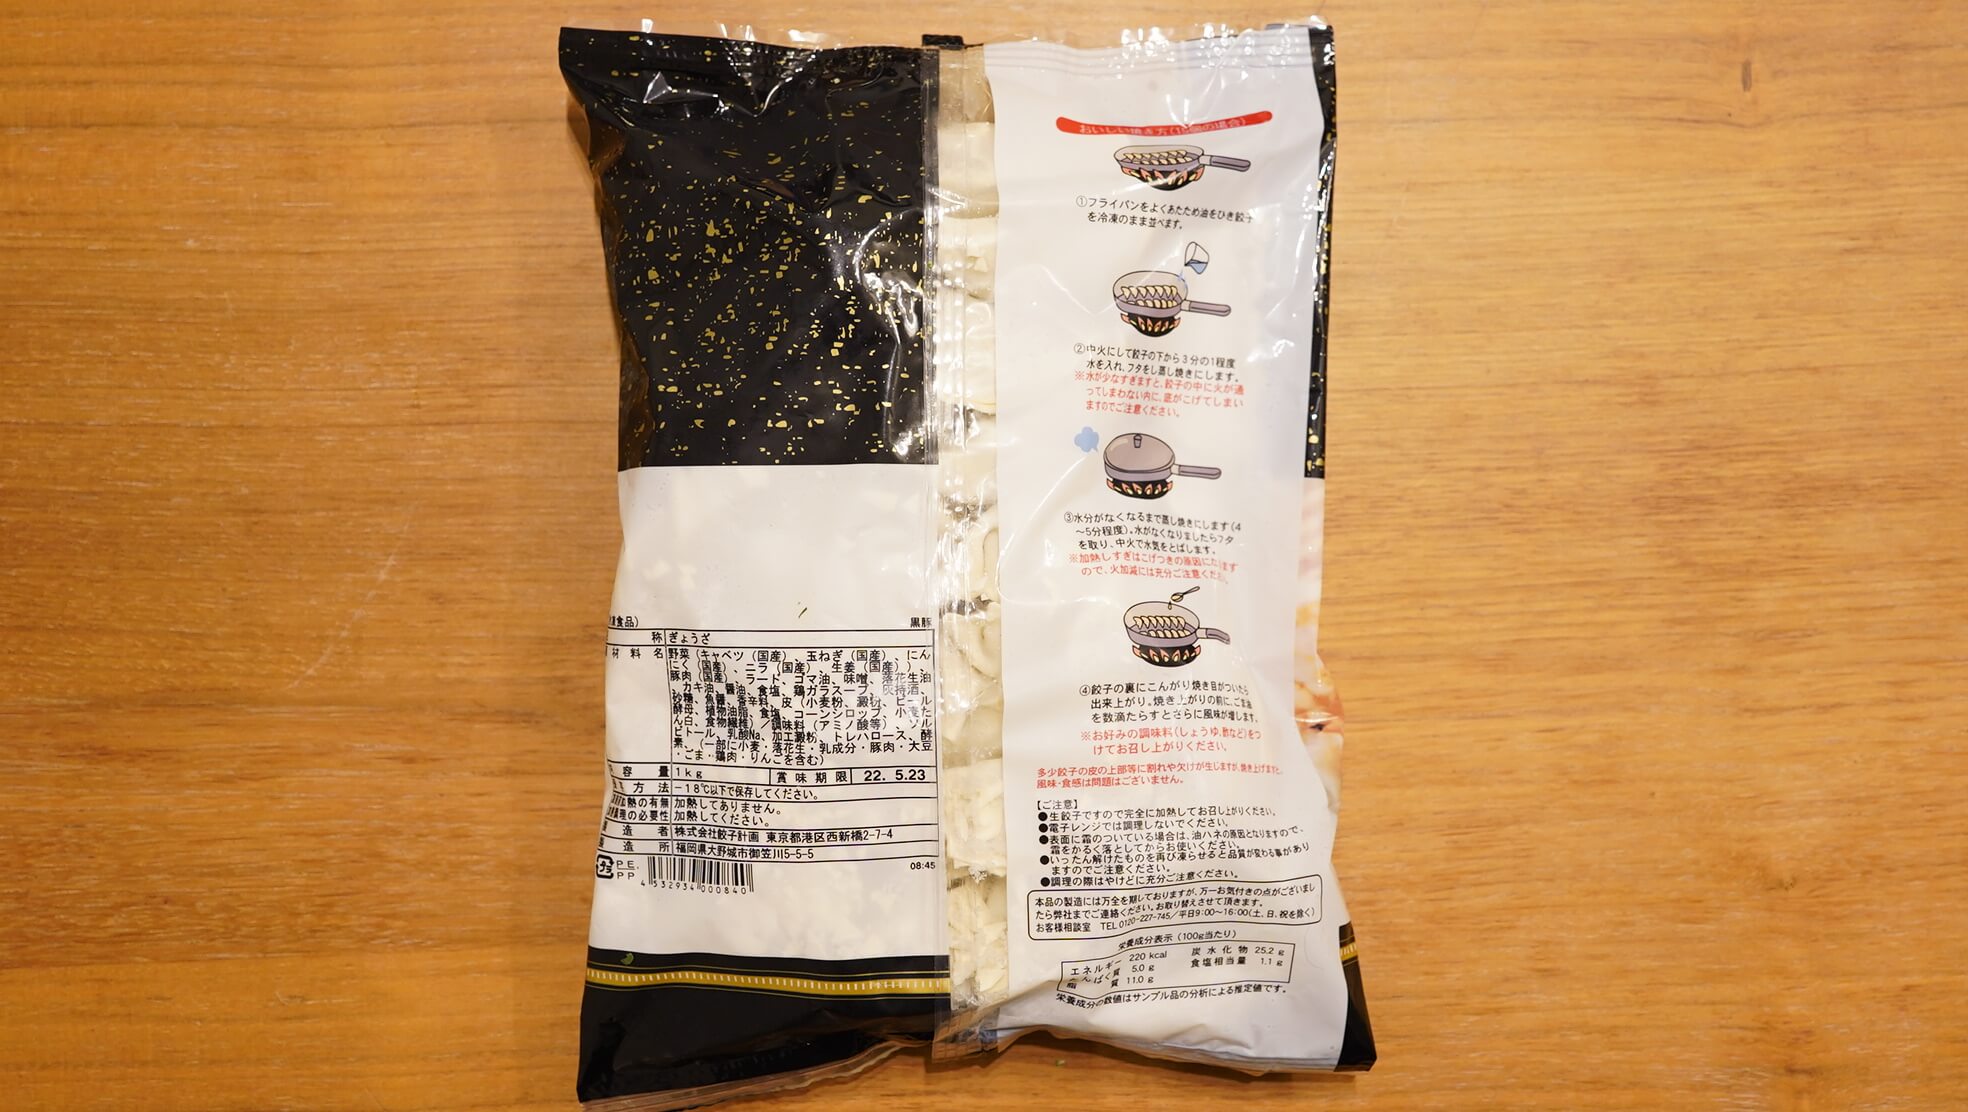 コストコの冷凍食品「餃子計画・黒豚餃子」のパッケージ裏面の写真